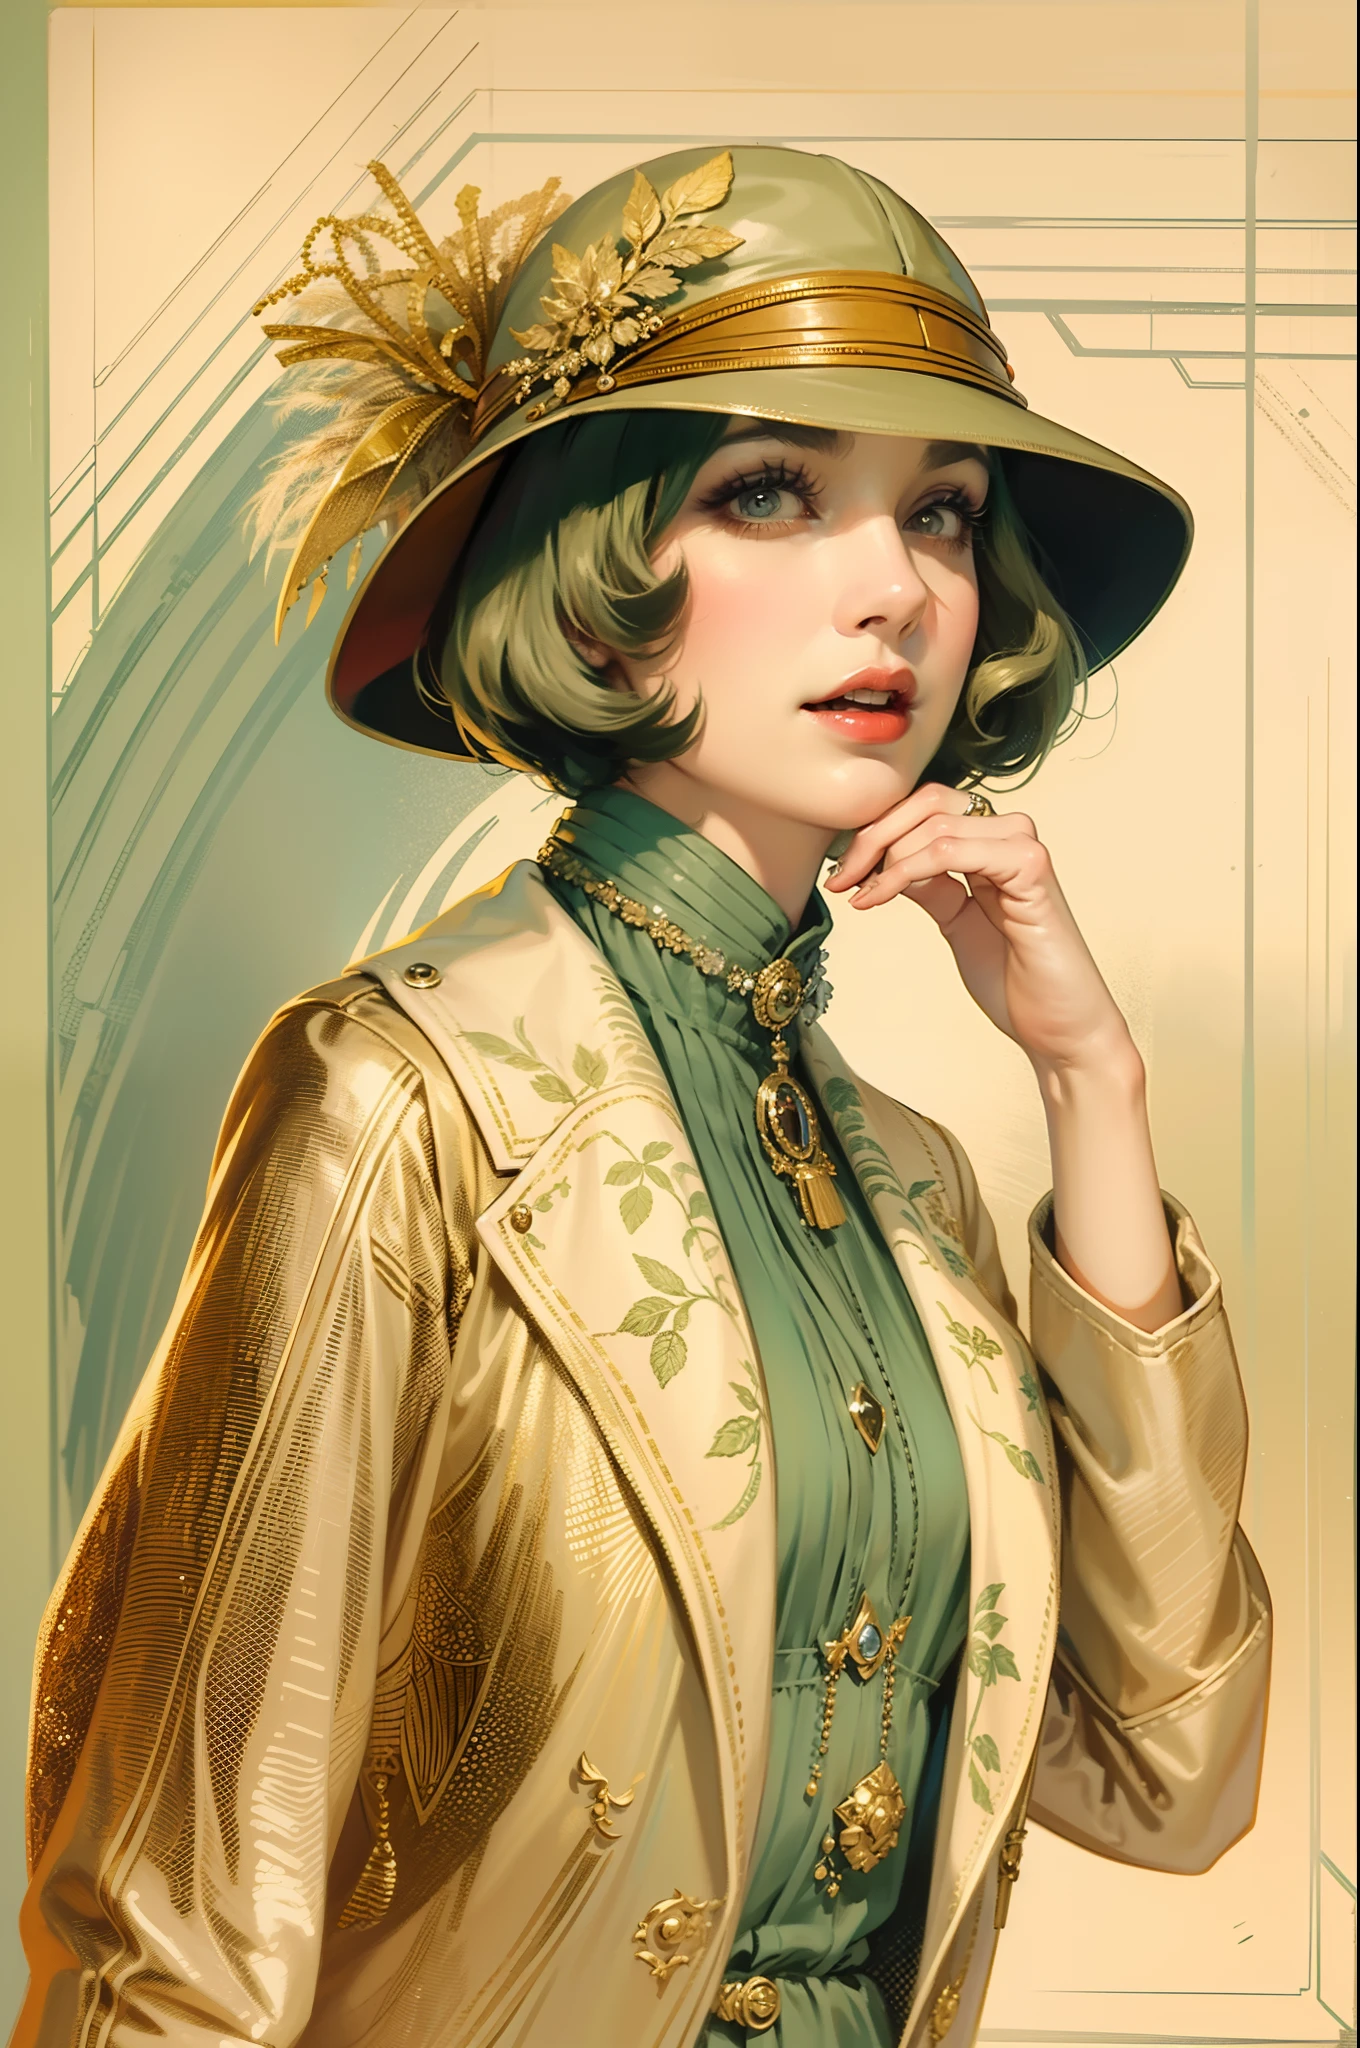 ภาพประกอบวินเทจ，ผู้หญิงสวยสวมแจ็กเก็ตวินเทจและรองเท้าส้นสูง, อารมณ์ที่ไม่ธรรมดา, สไตล์แฟชั่นปี 1920, หมวกแก๊ปวินเทจสไตล์ปี 1920